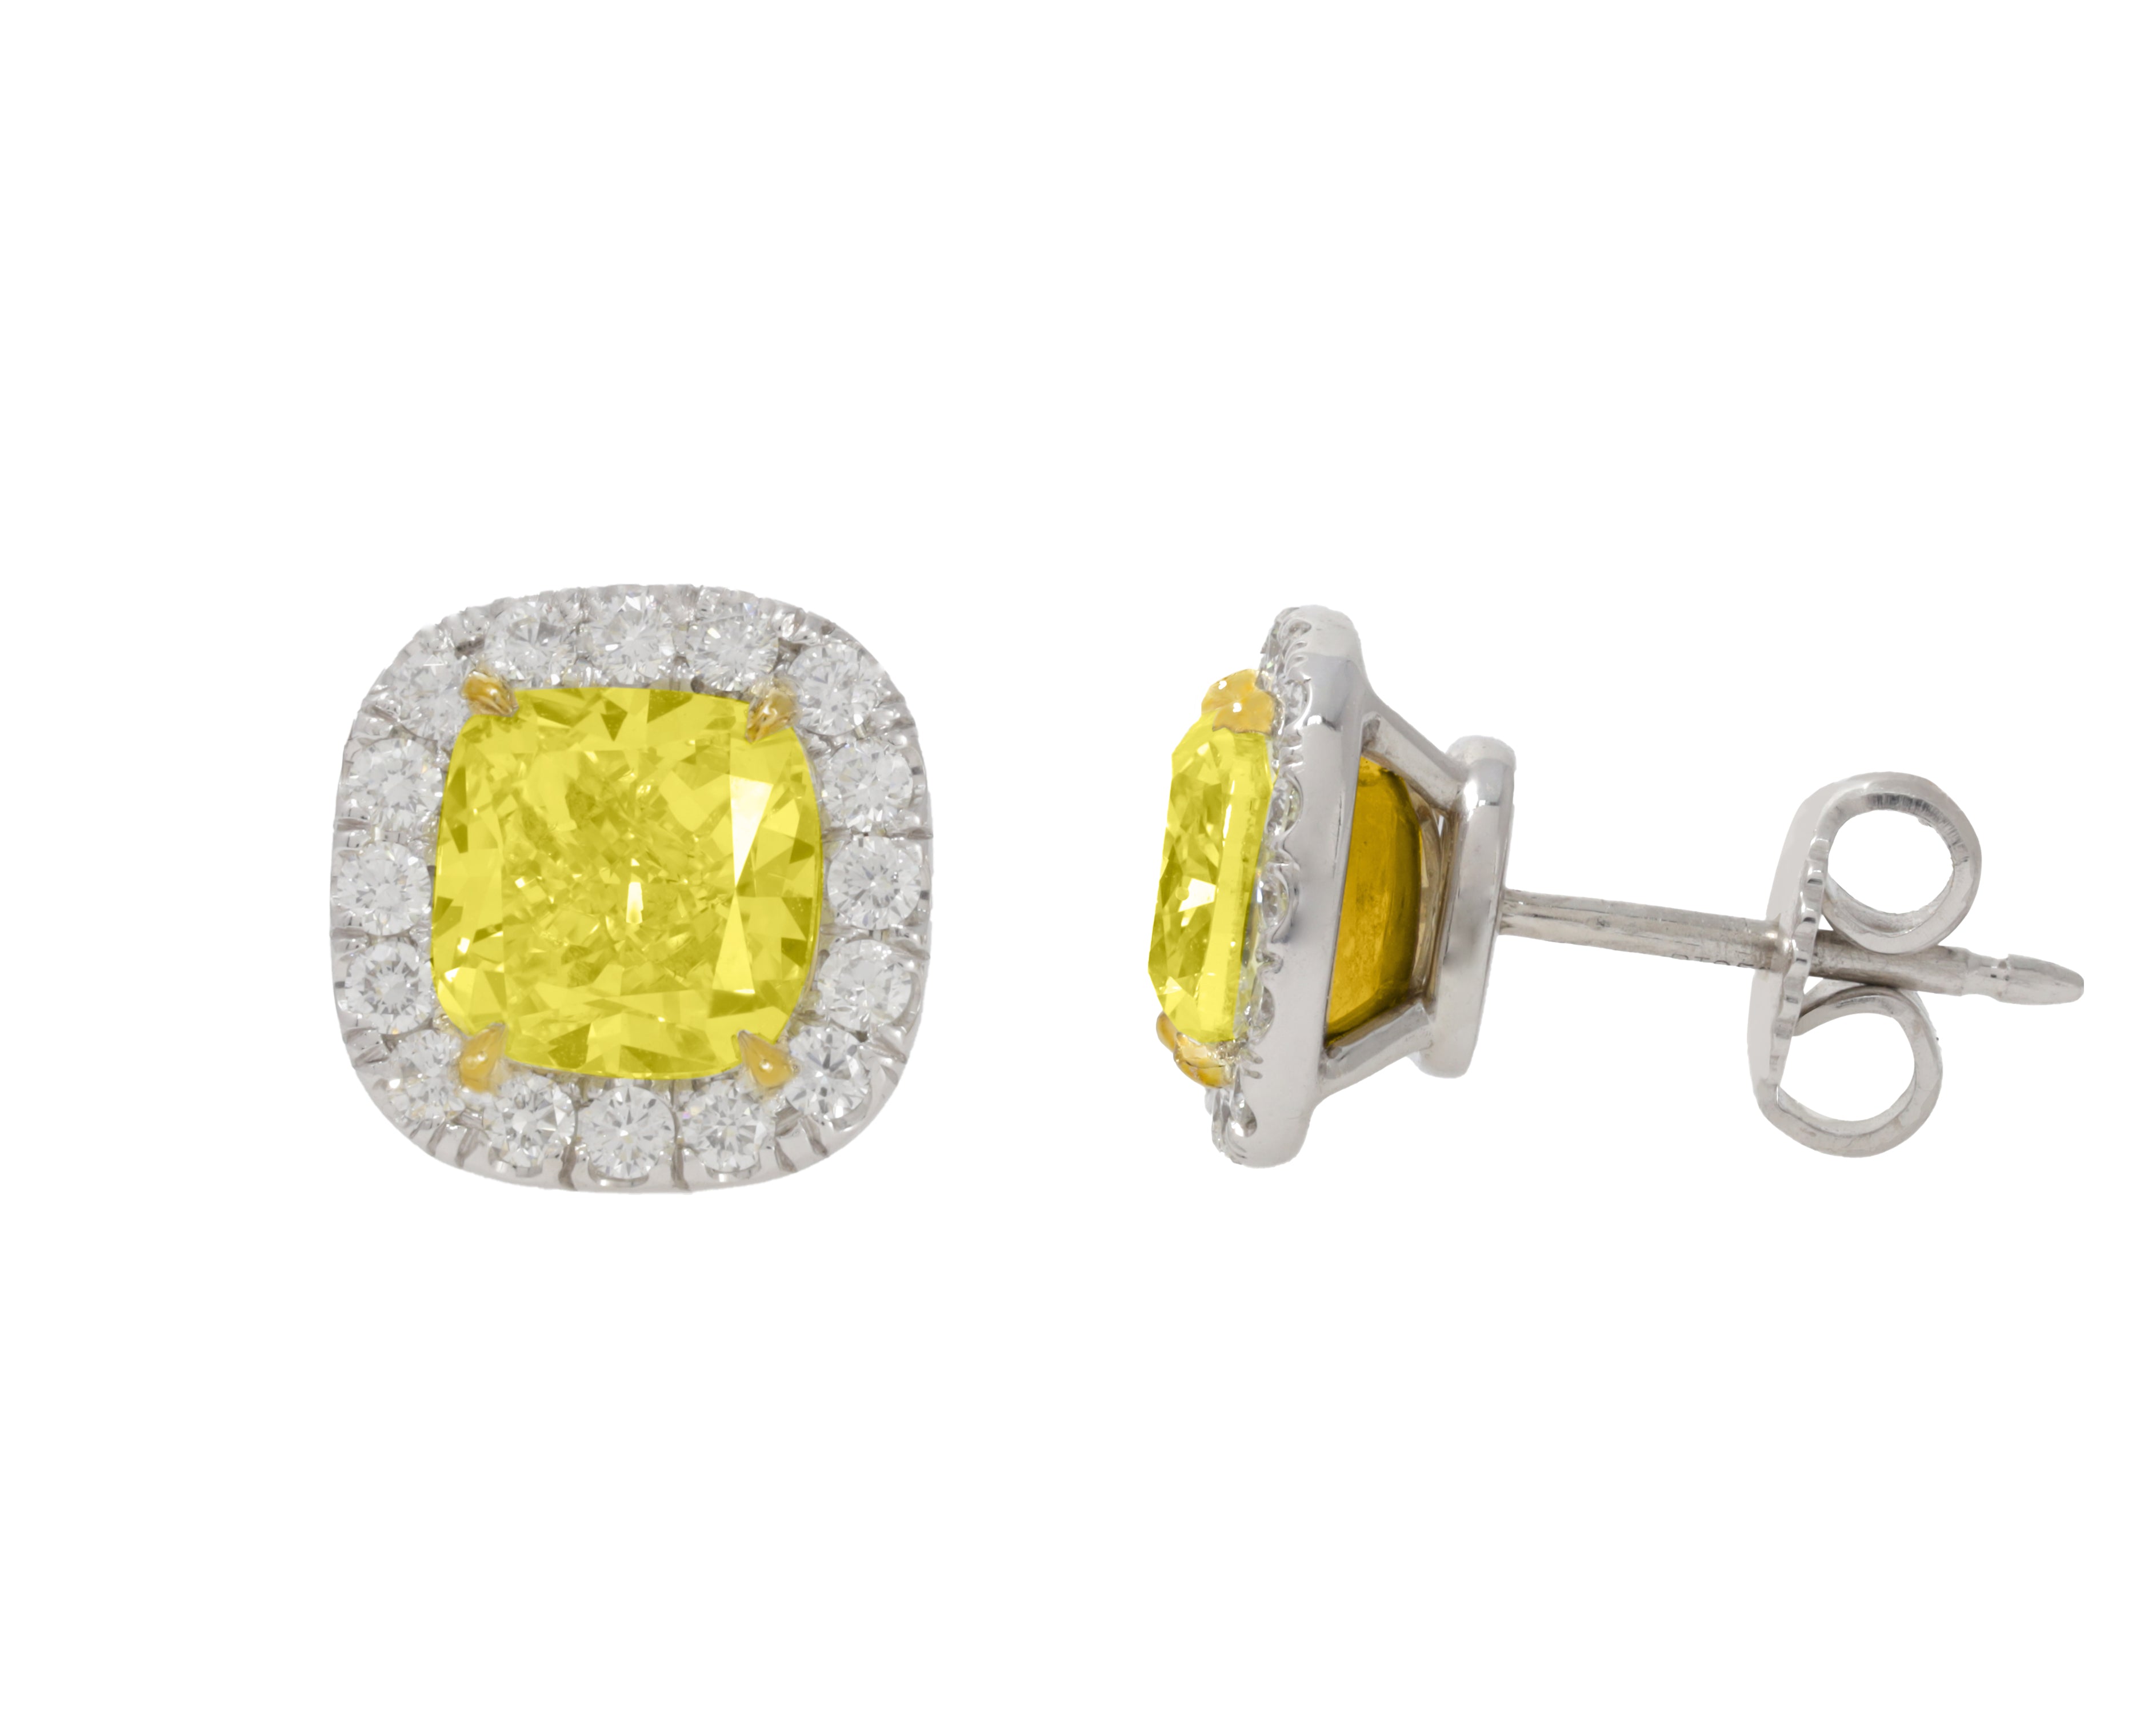 3.01ct Fancy Yellow Diamond Halo Stud Earring